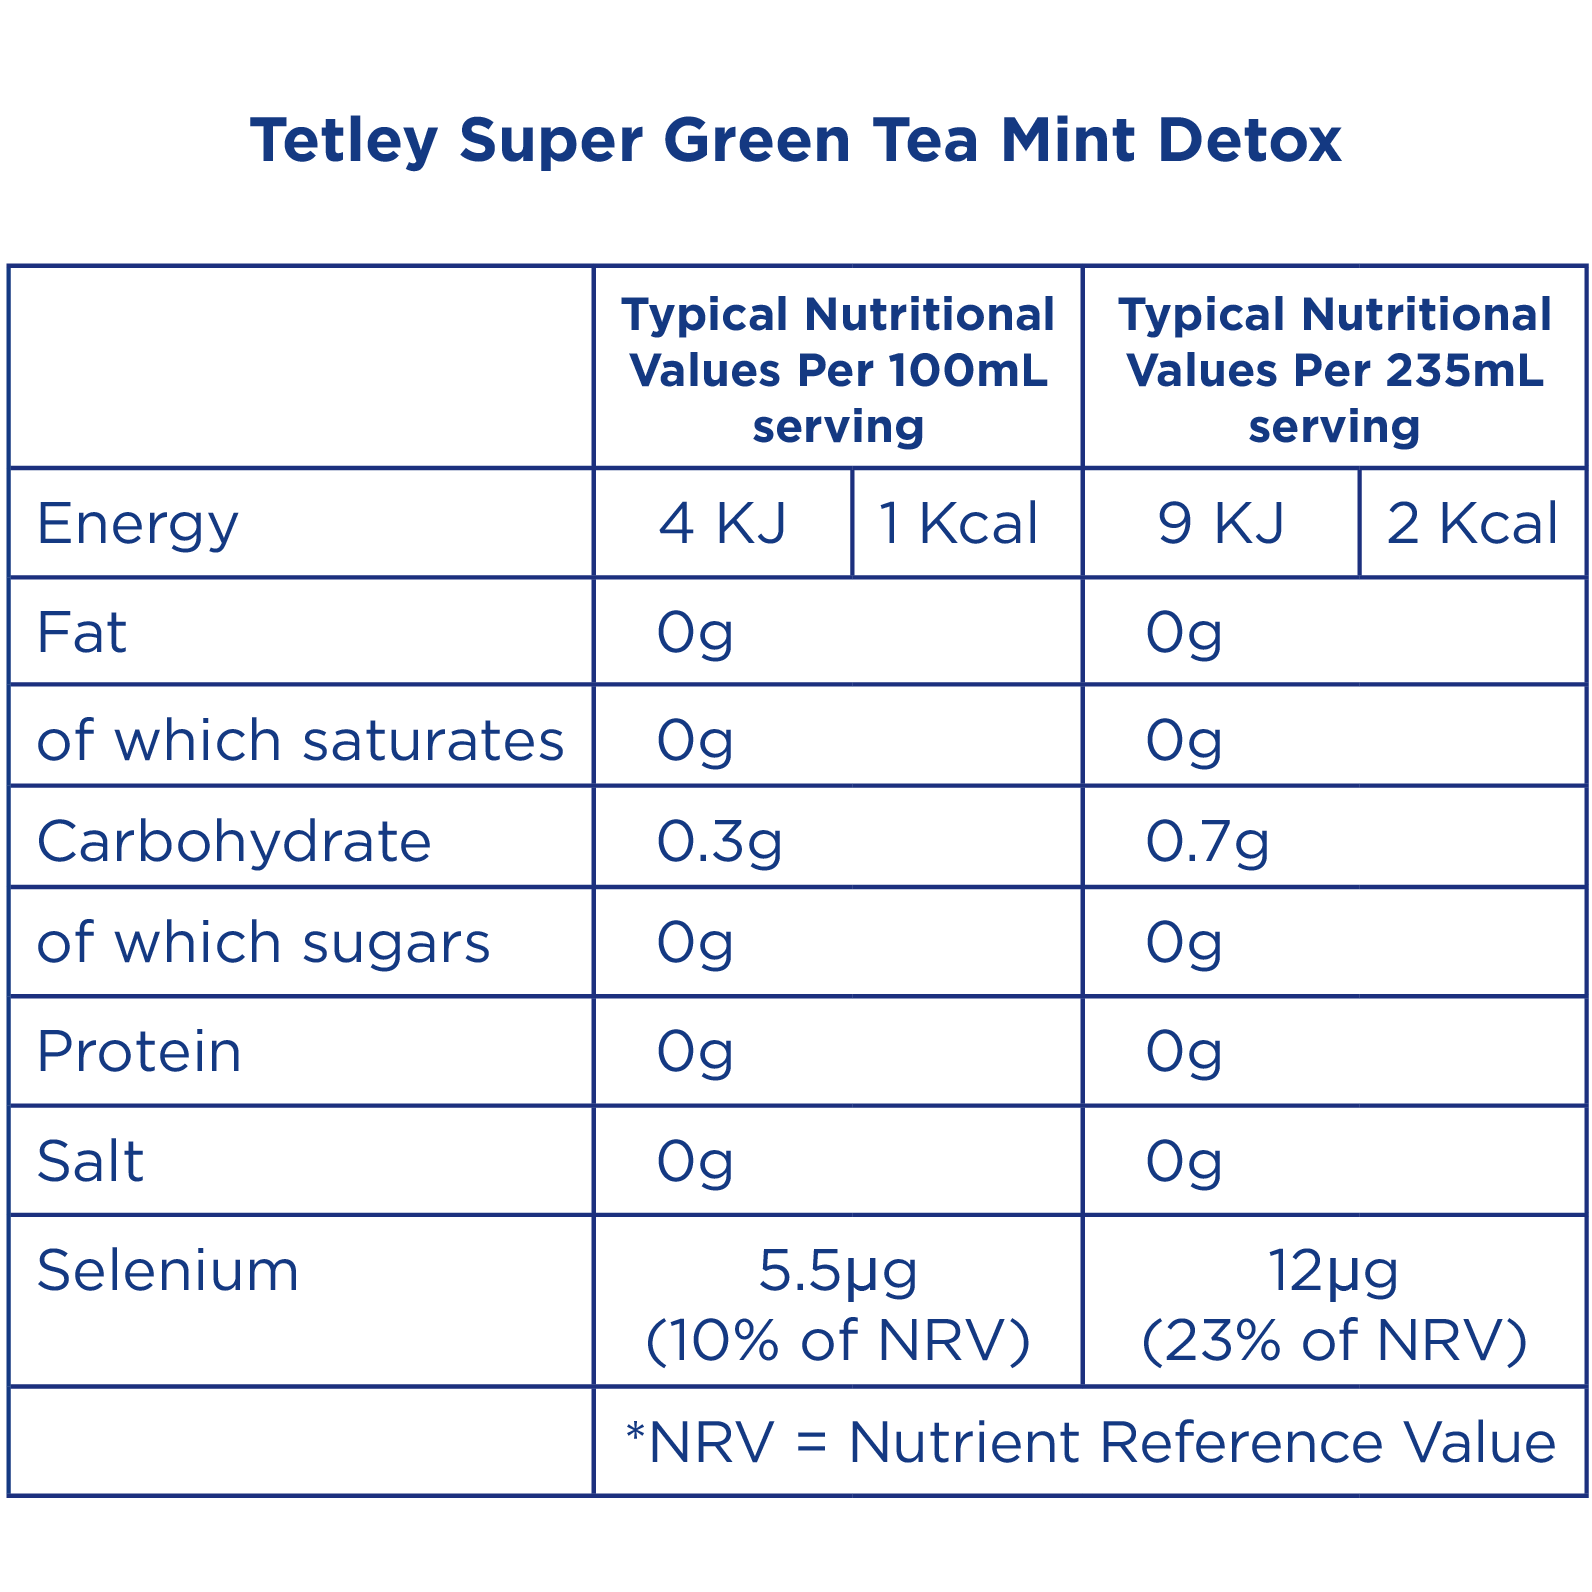 Tetley Super Green Tea Detox Mint - Nutritional Information